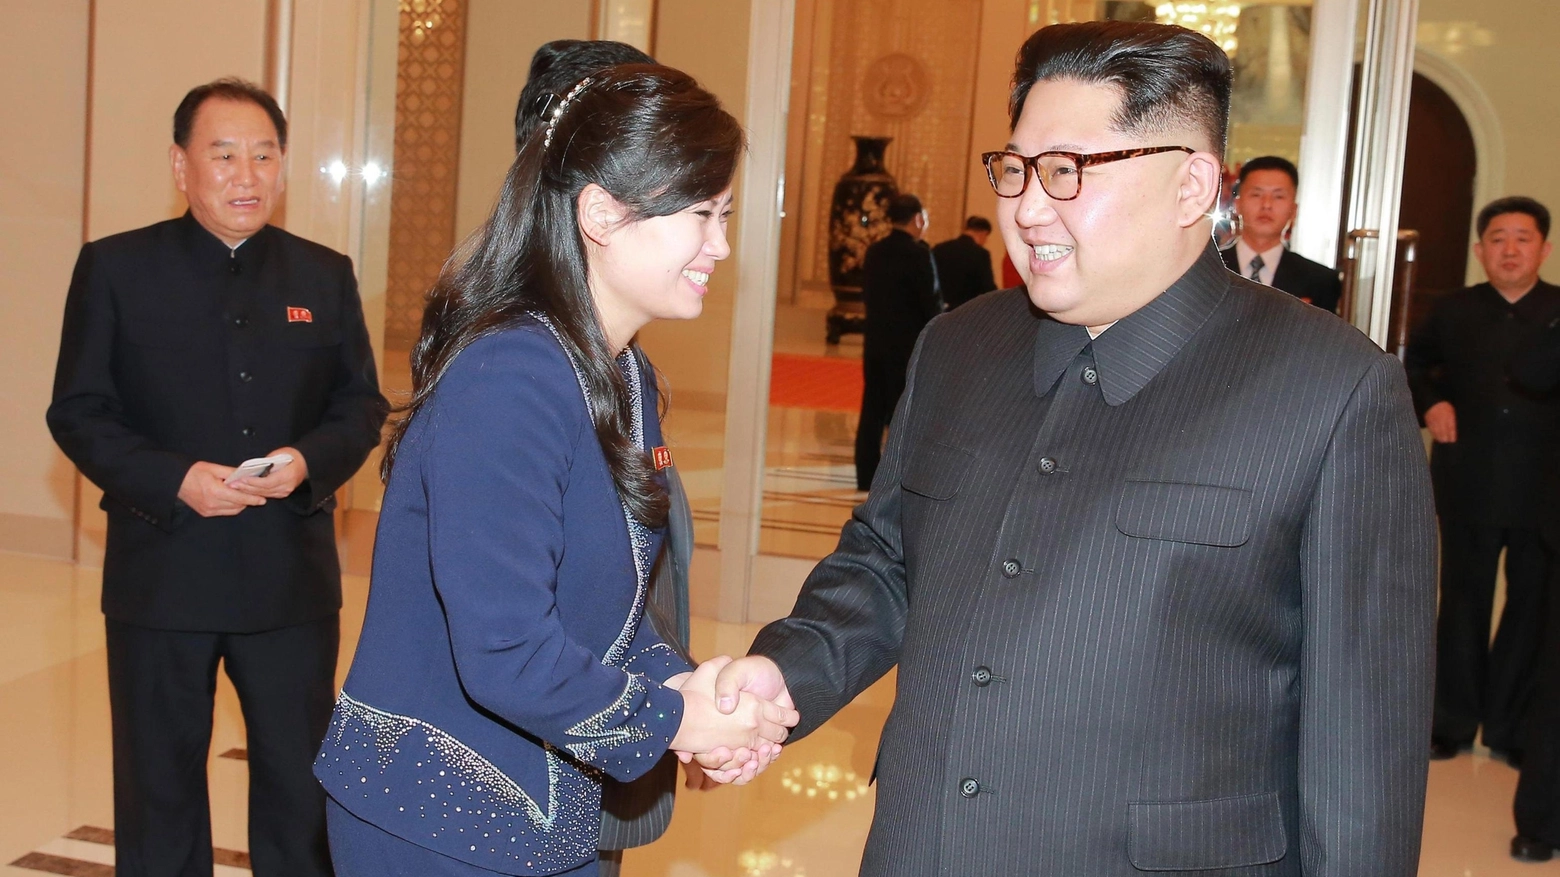 Kim Jong Un con Hyon Song wol, leader della Moranbong band inviata a Seul (Ansa)